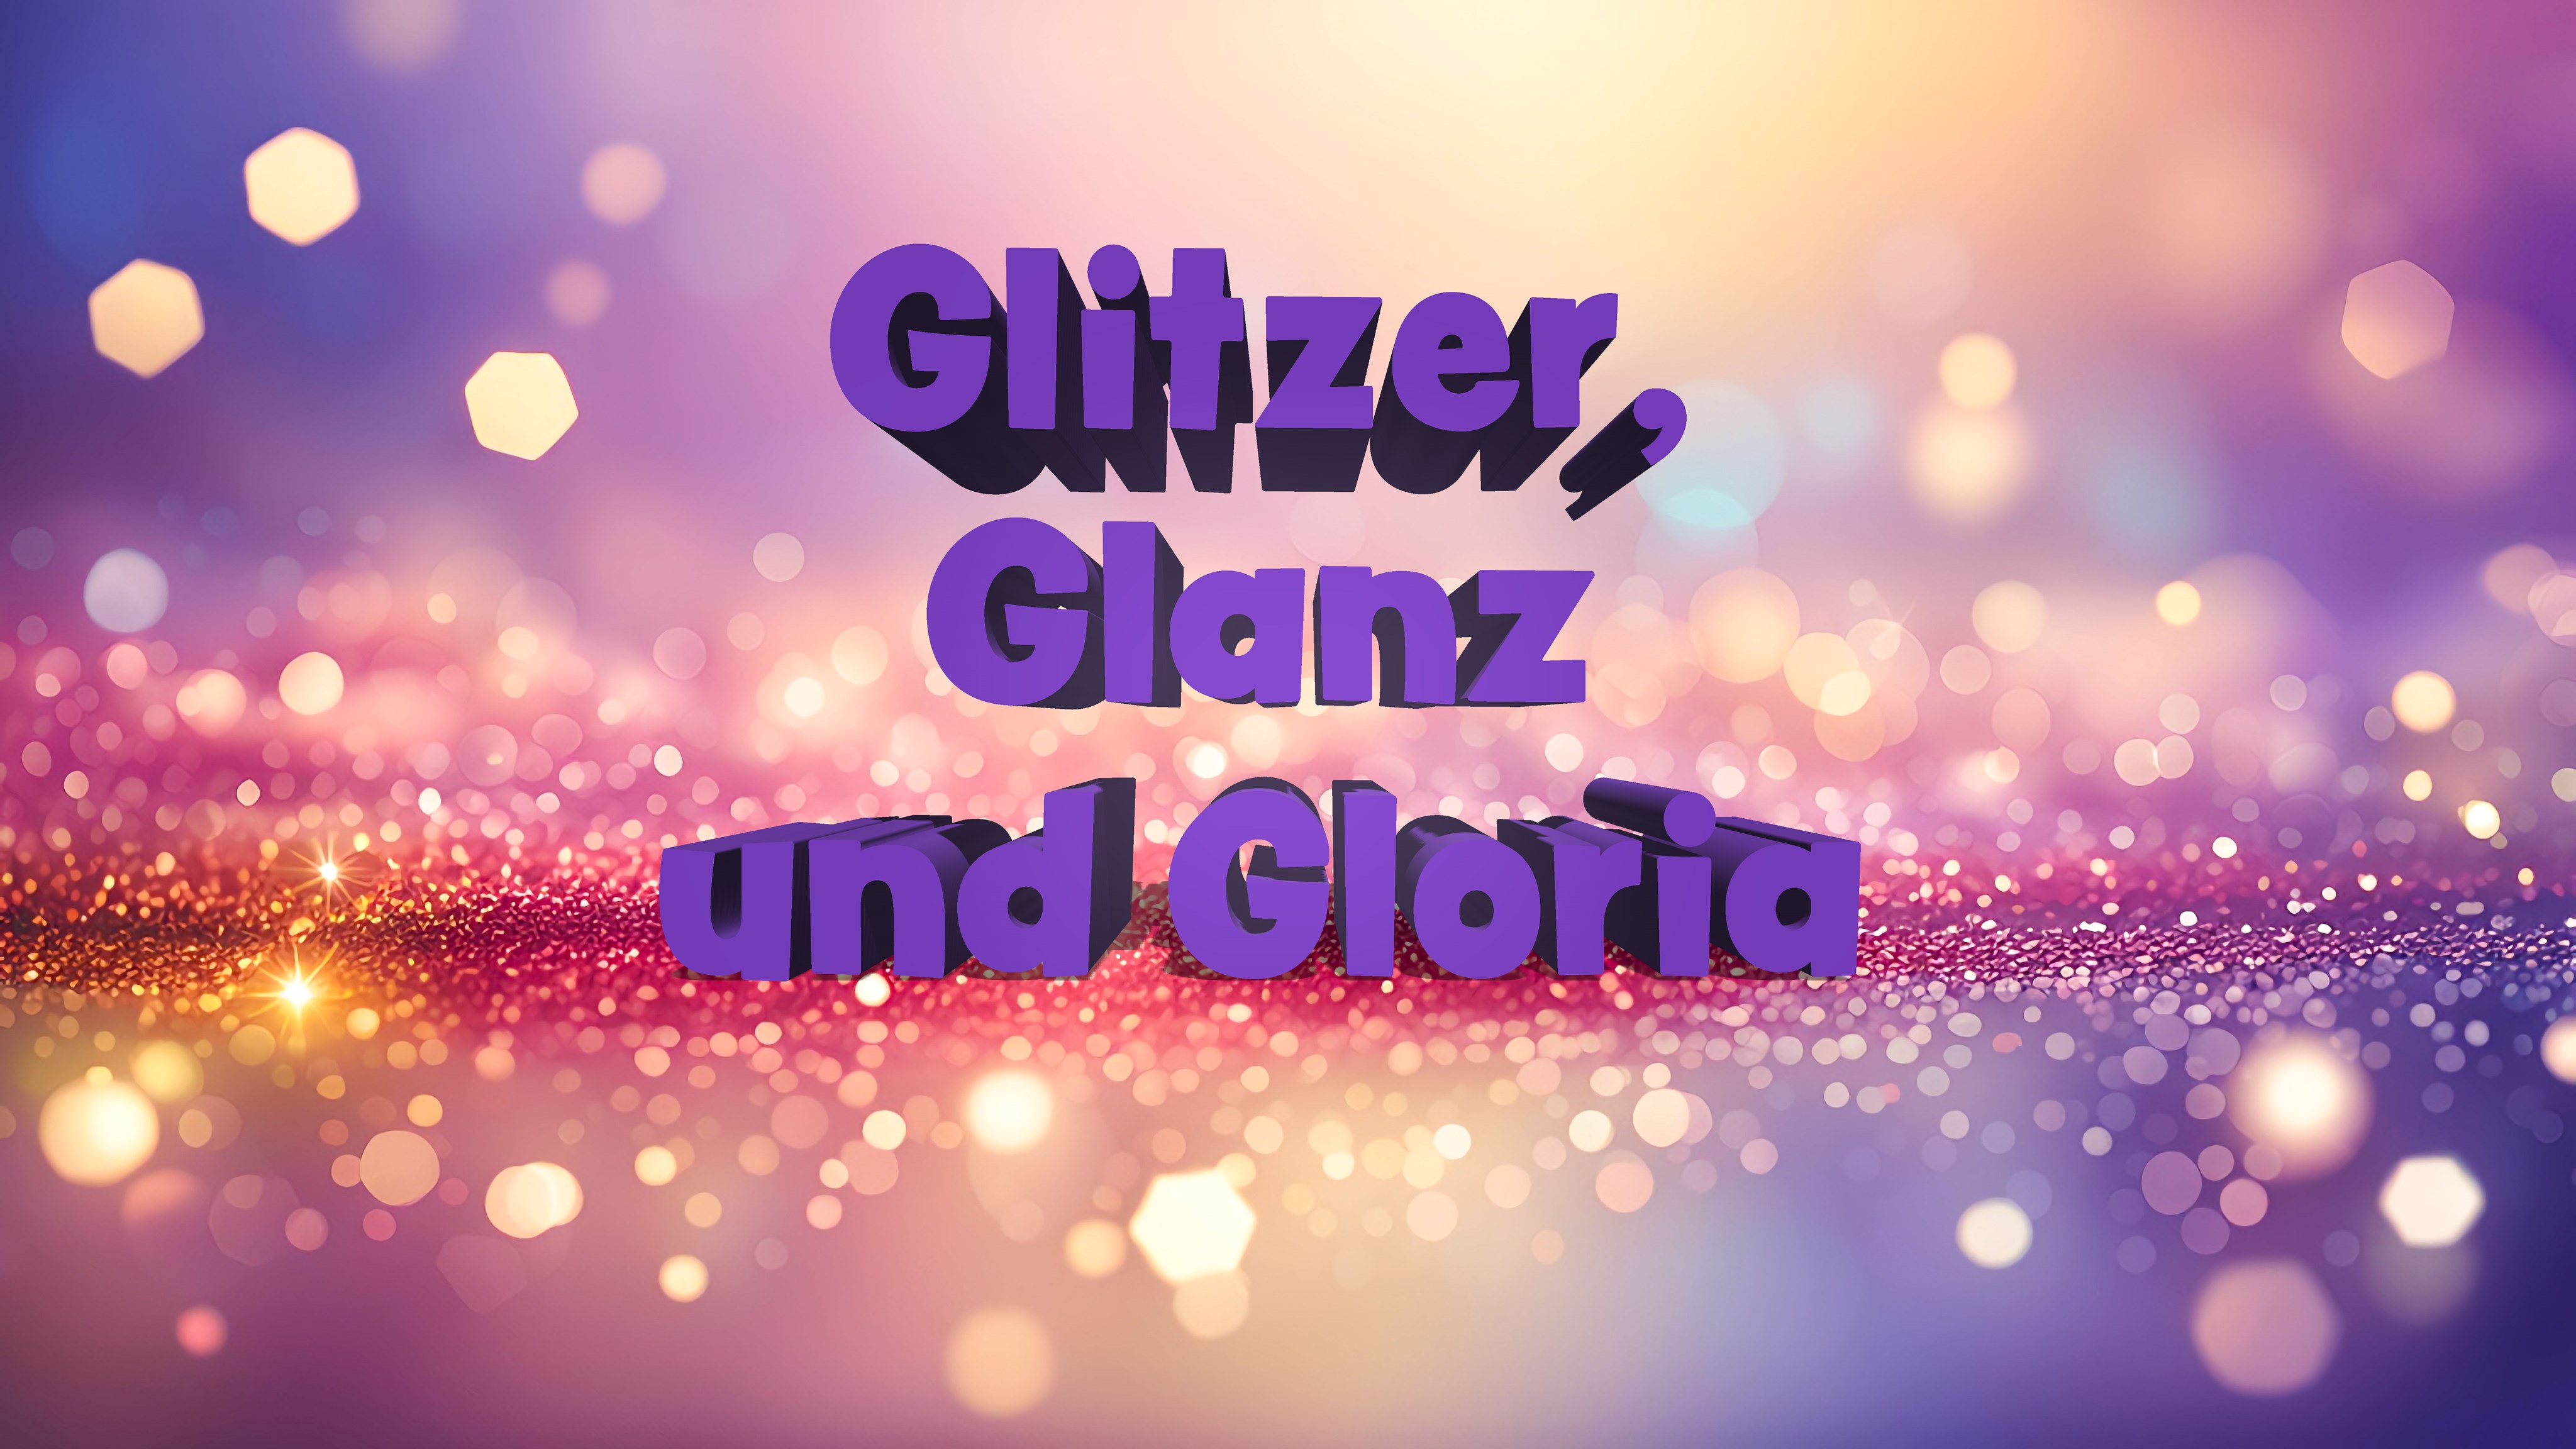 Der Schriftzug Glitzer, Glanz und Gloria auf einem rosa-golden funkelnden Hintergrund